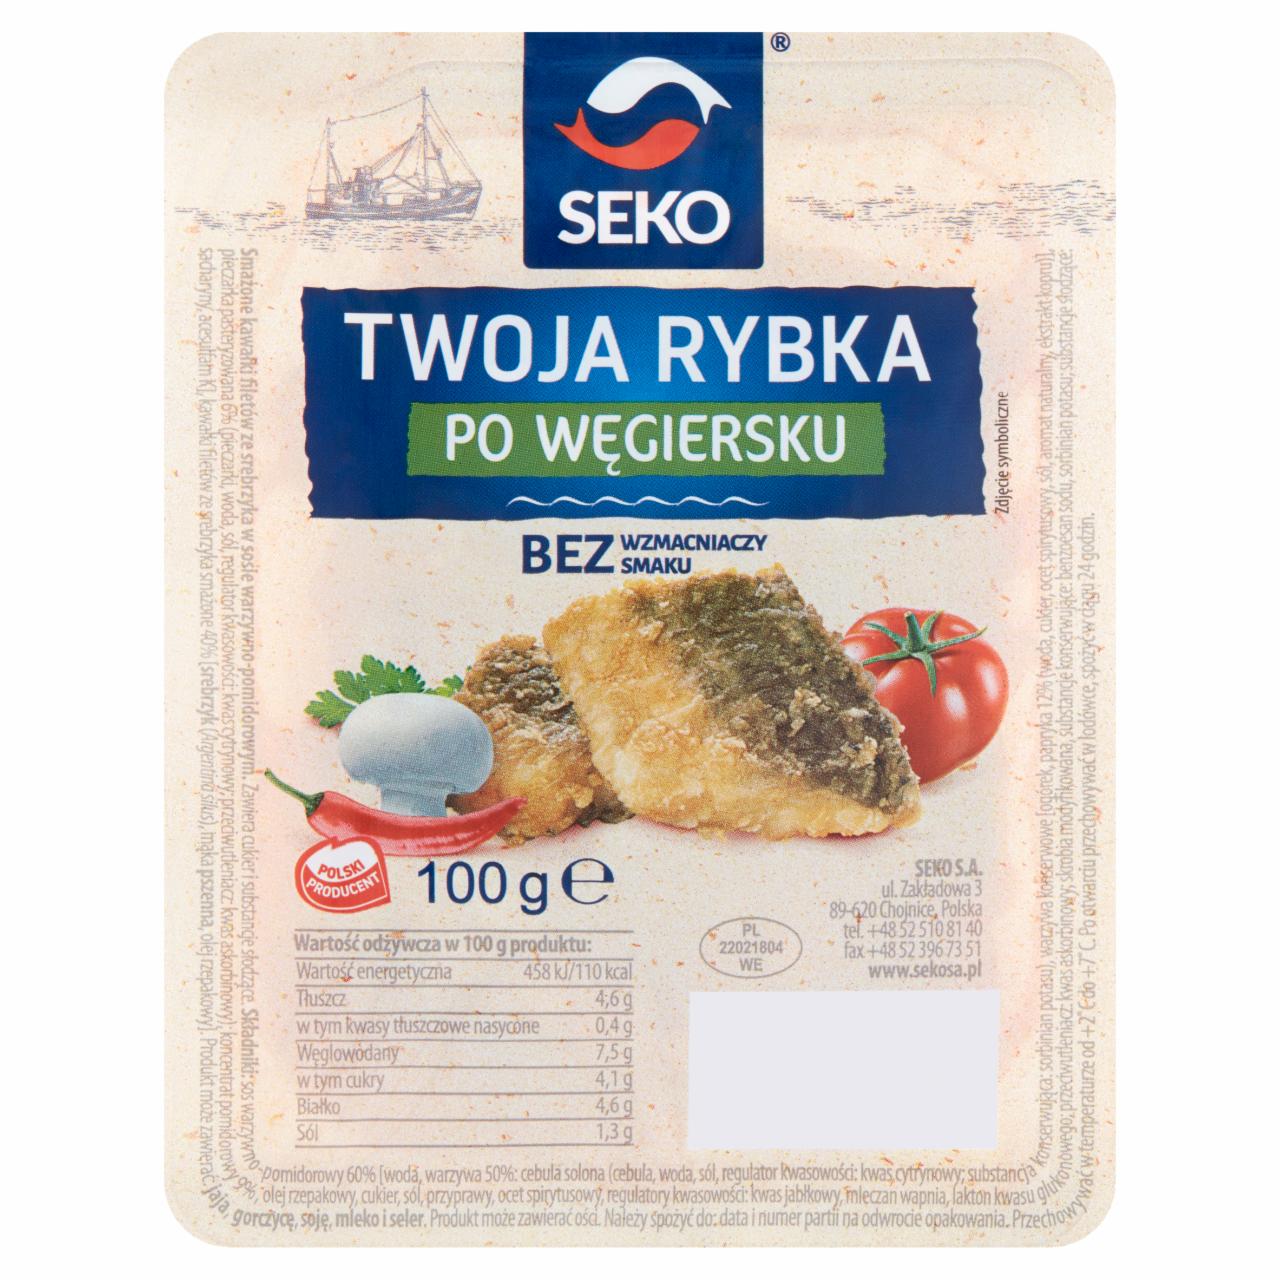 Zdjęcia - Seko Twoja rybka po węgiersku 100 g